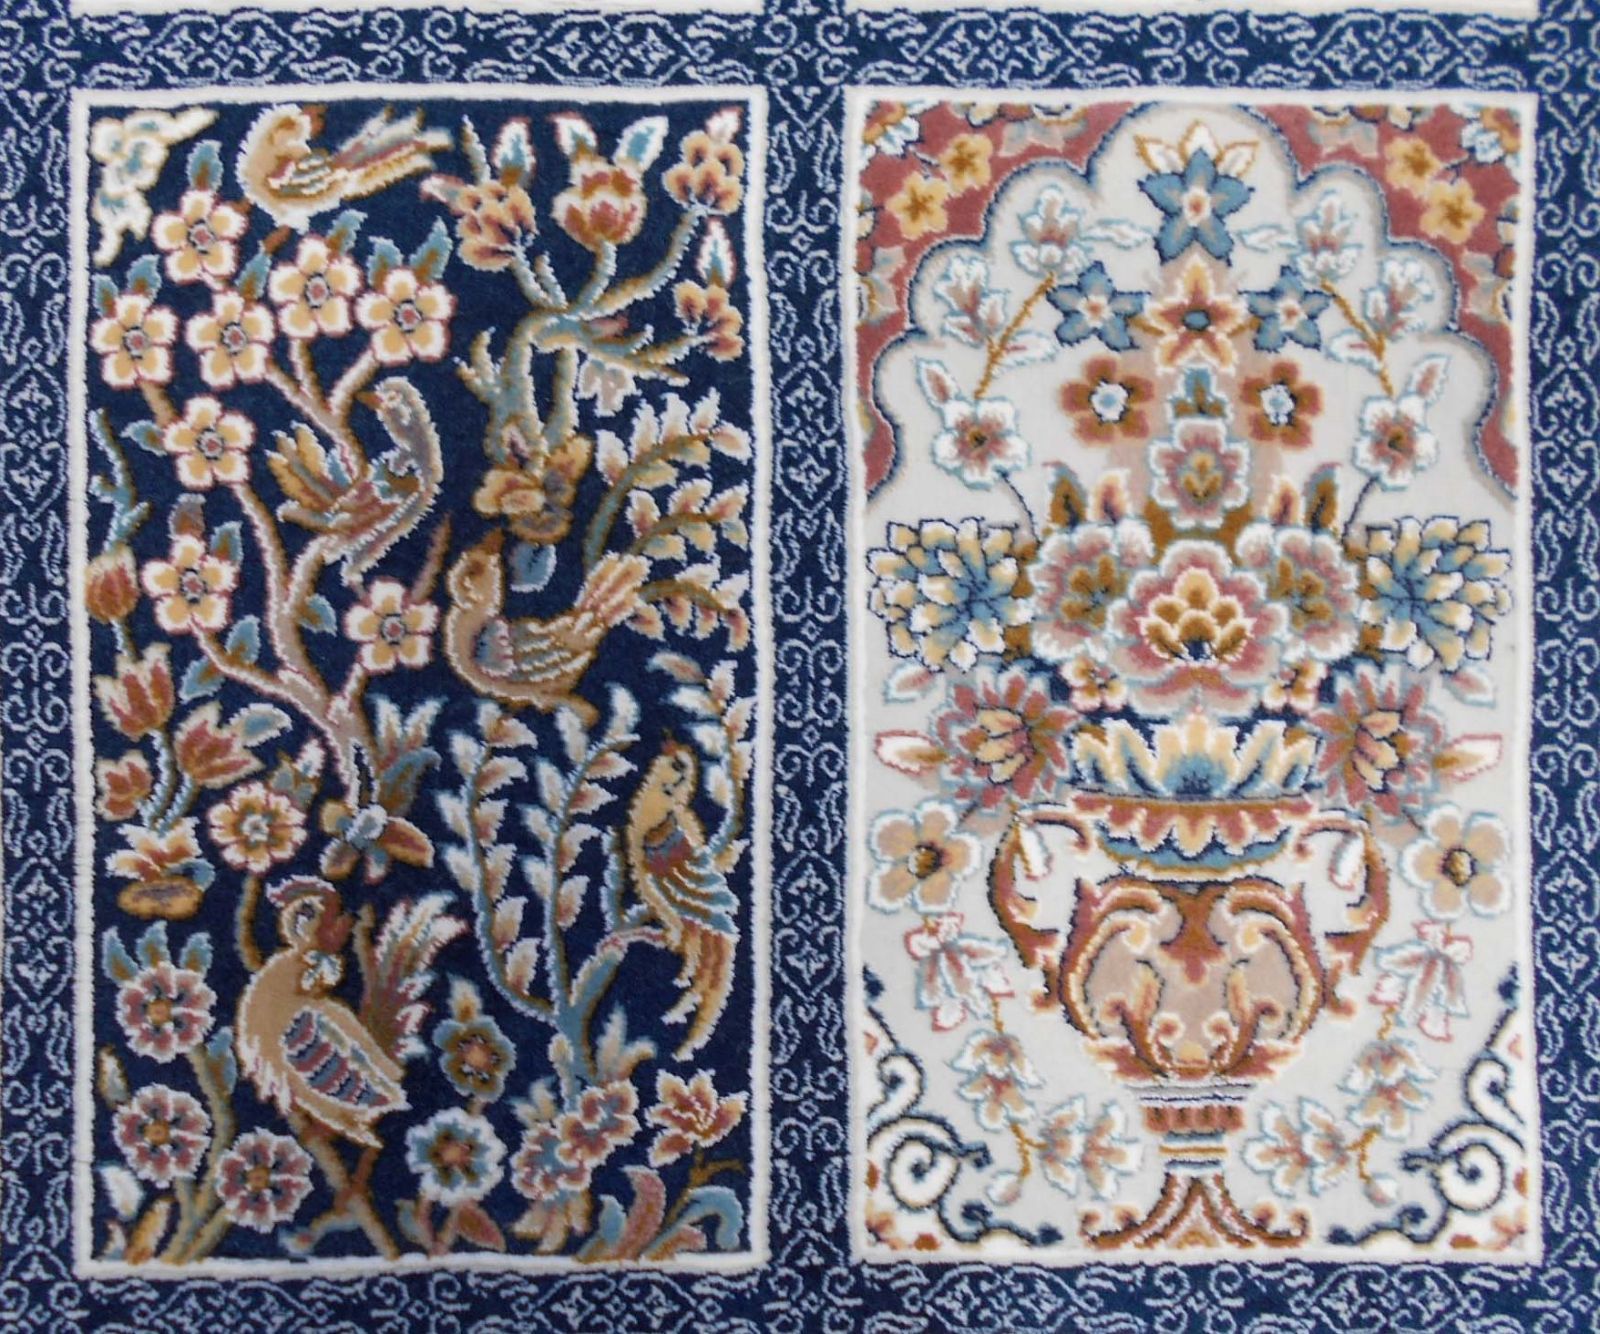 発売モデル 225万ノット 超高密度織 絨毯 本場イラン産 100×150cm